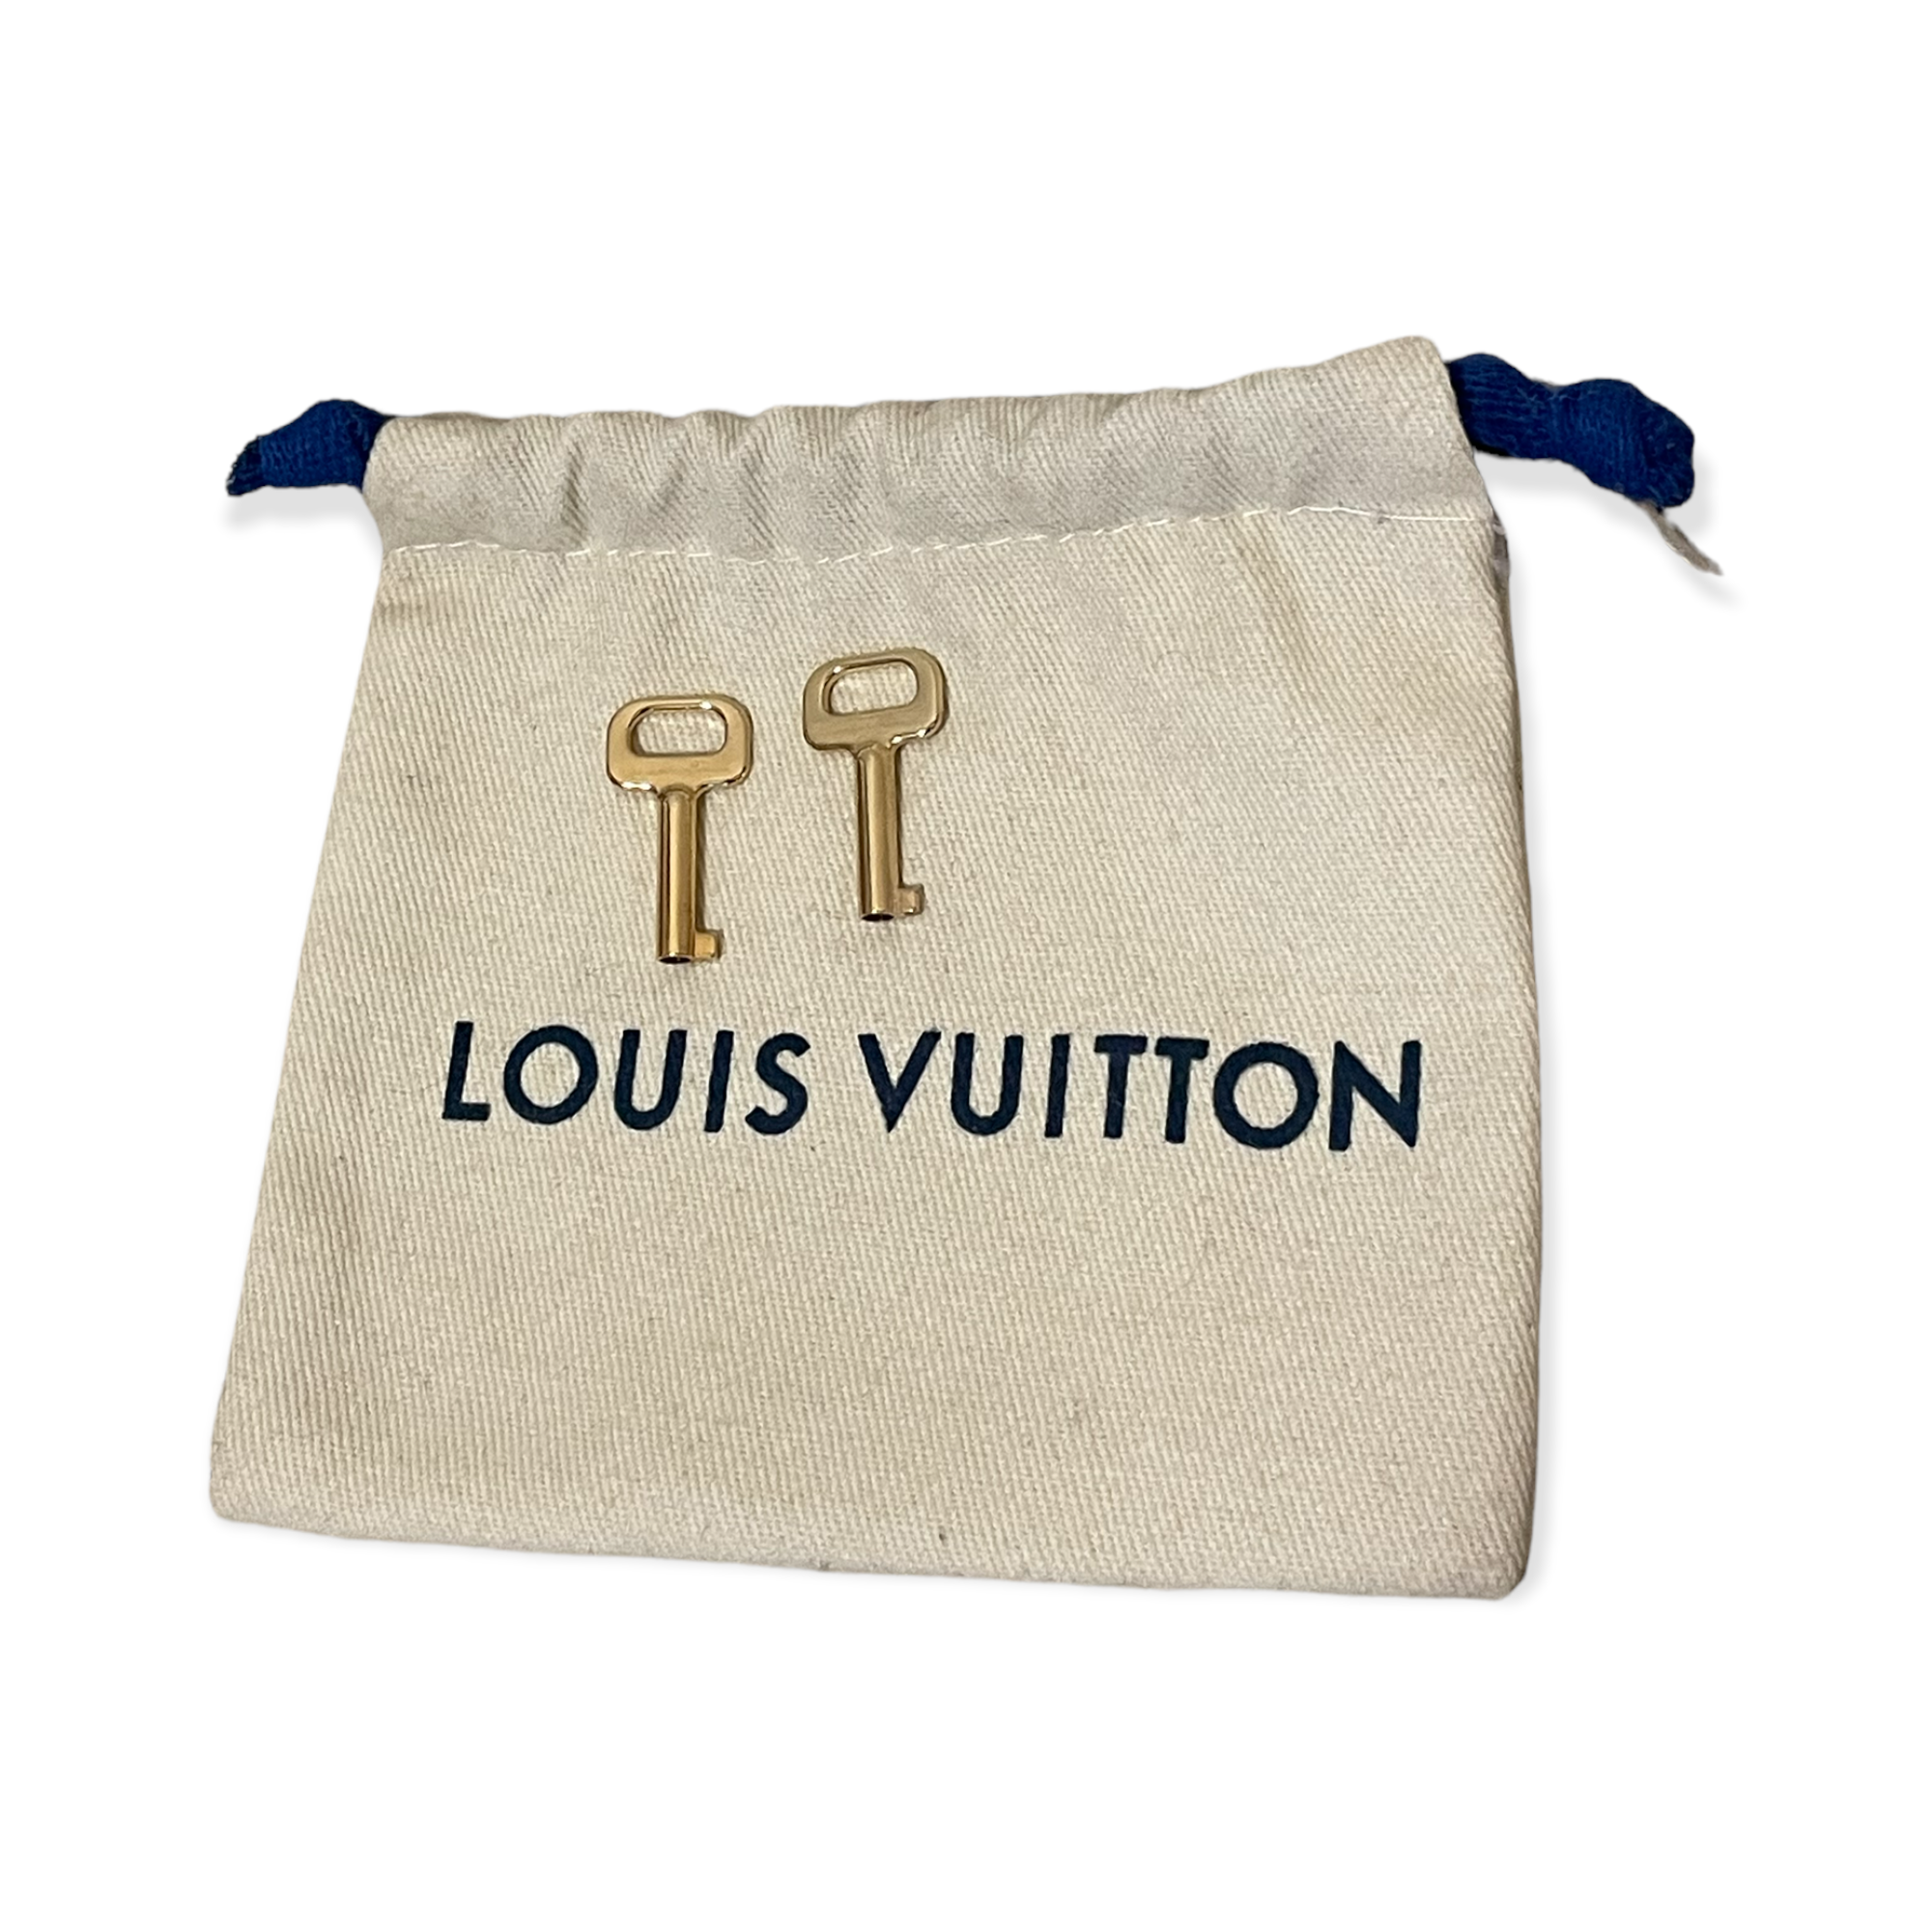 Authentic Louis Vuitton Padlock 🔐 Keys